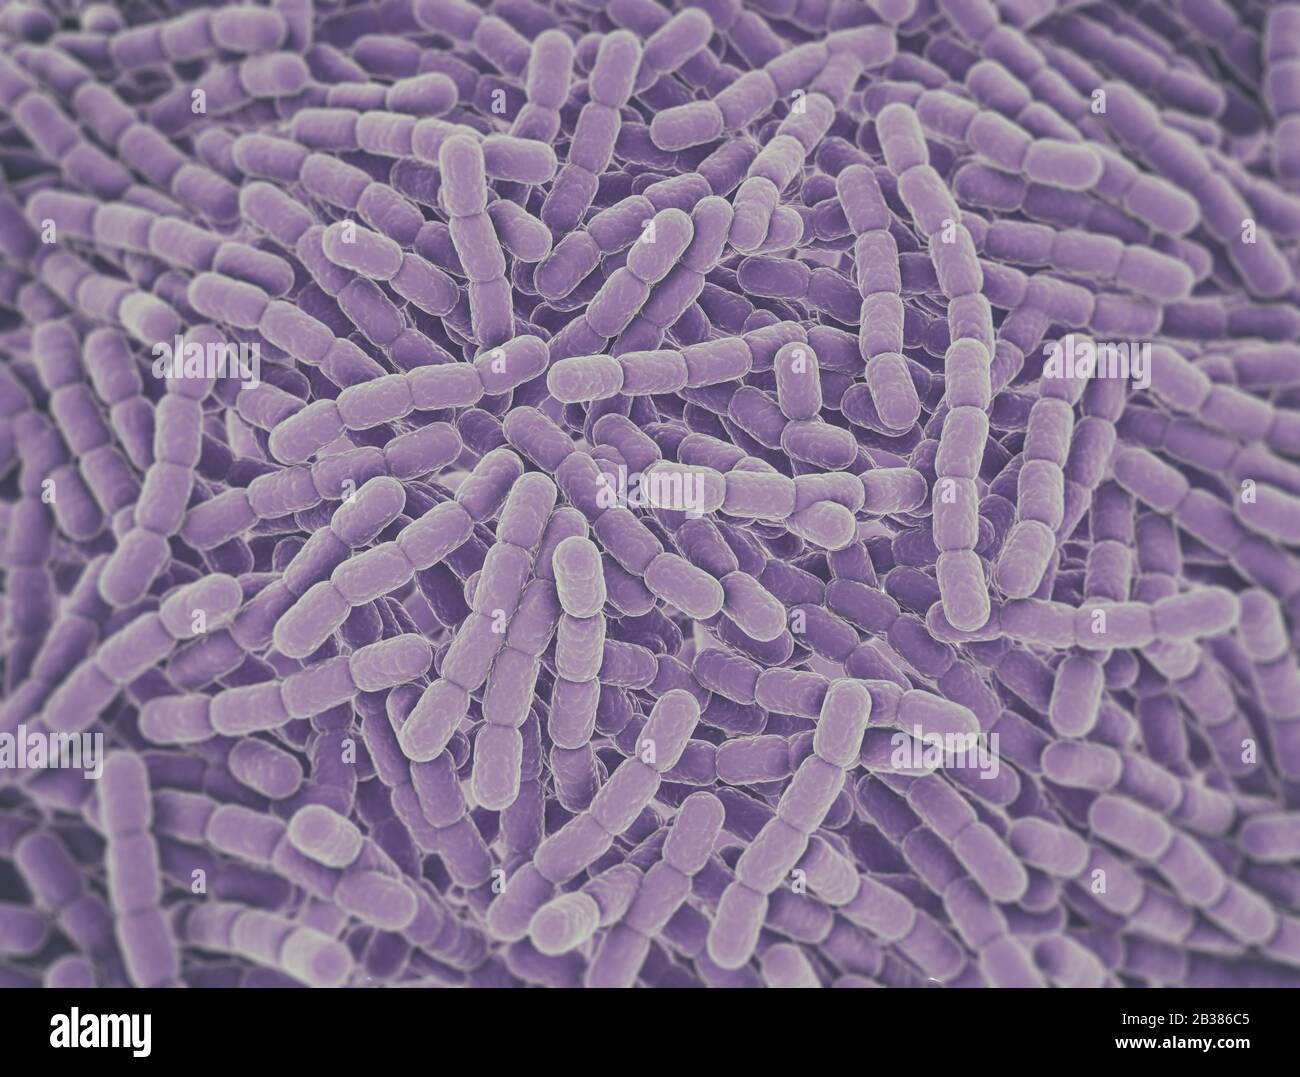 Streptococcus Pneumonie Bakterienzellen. Mikroskopischer 3D-Renderhintergrund Stockfoto